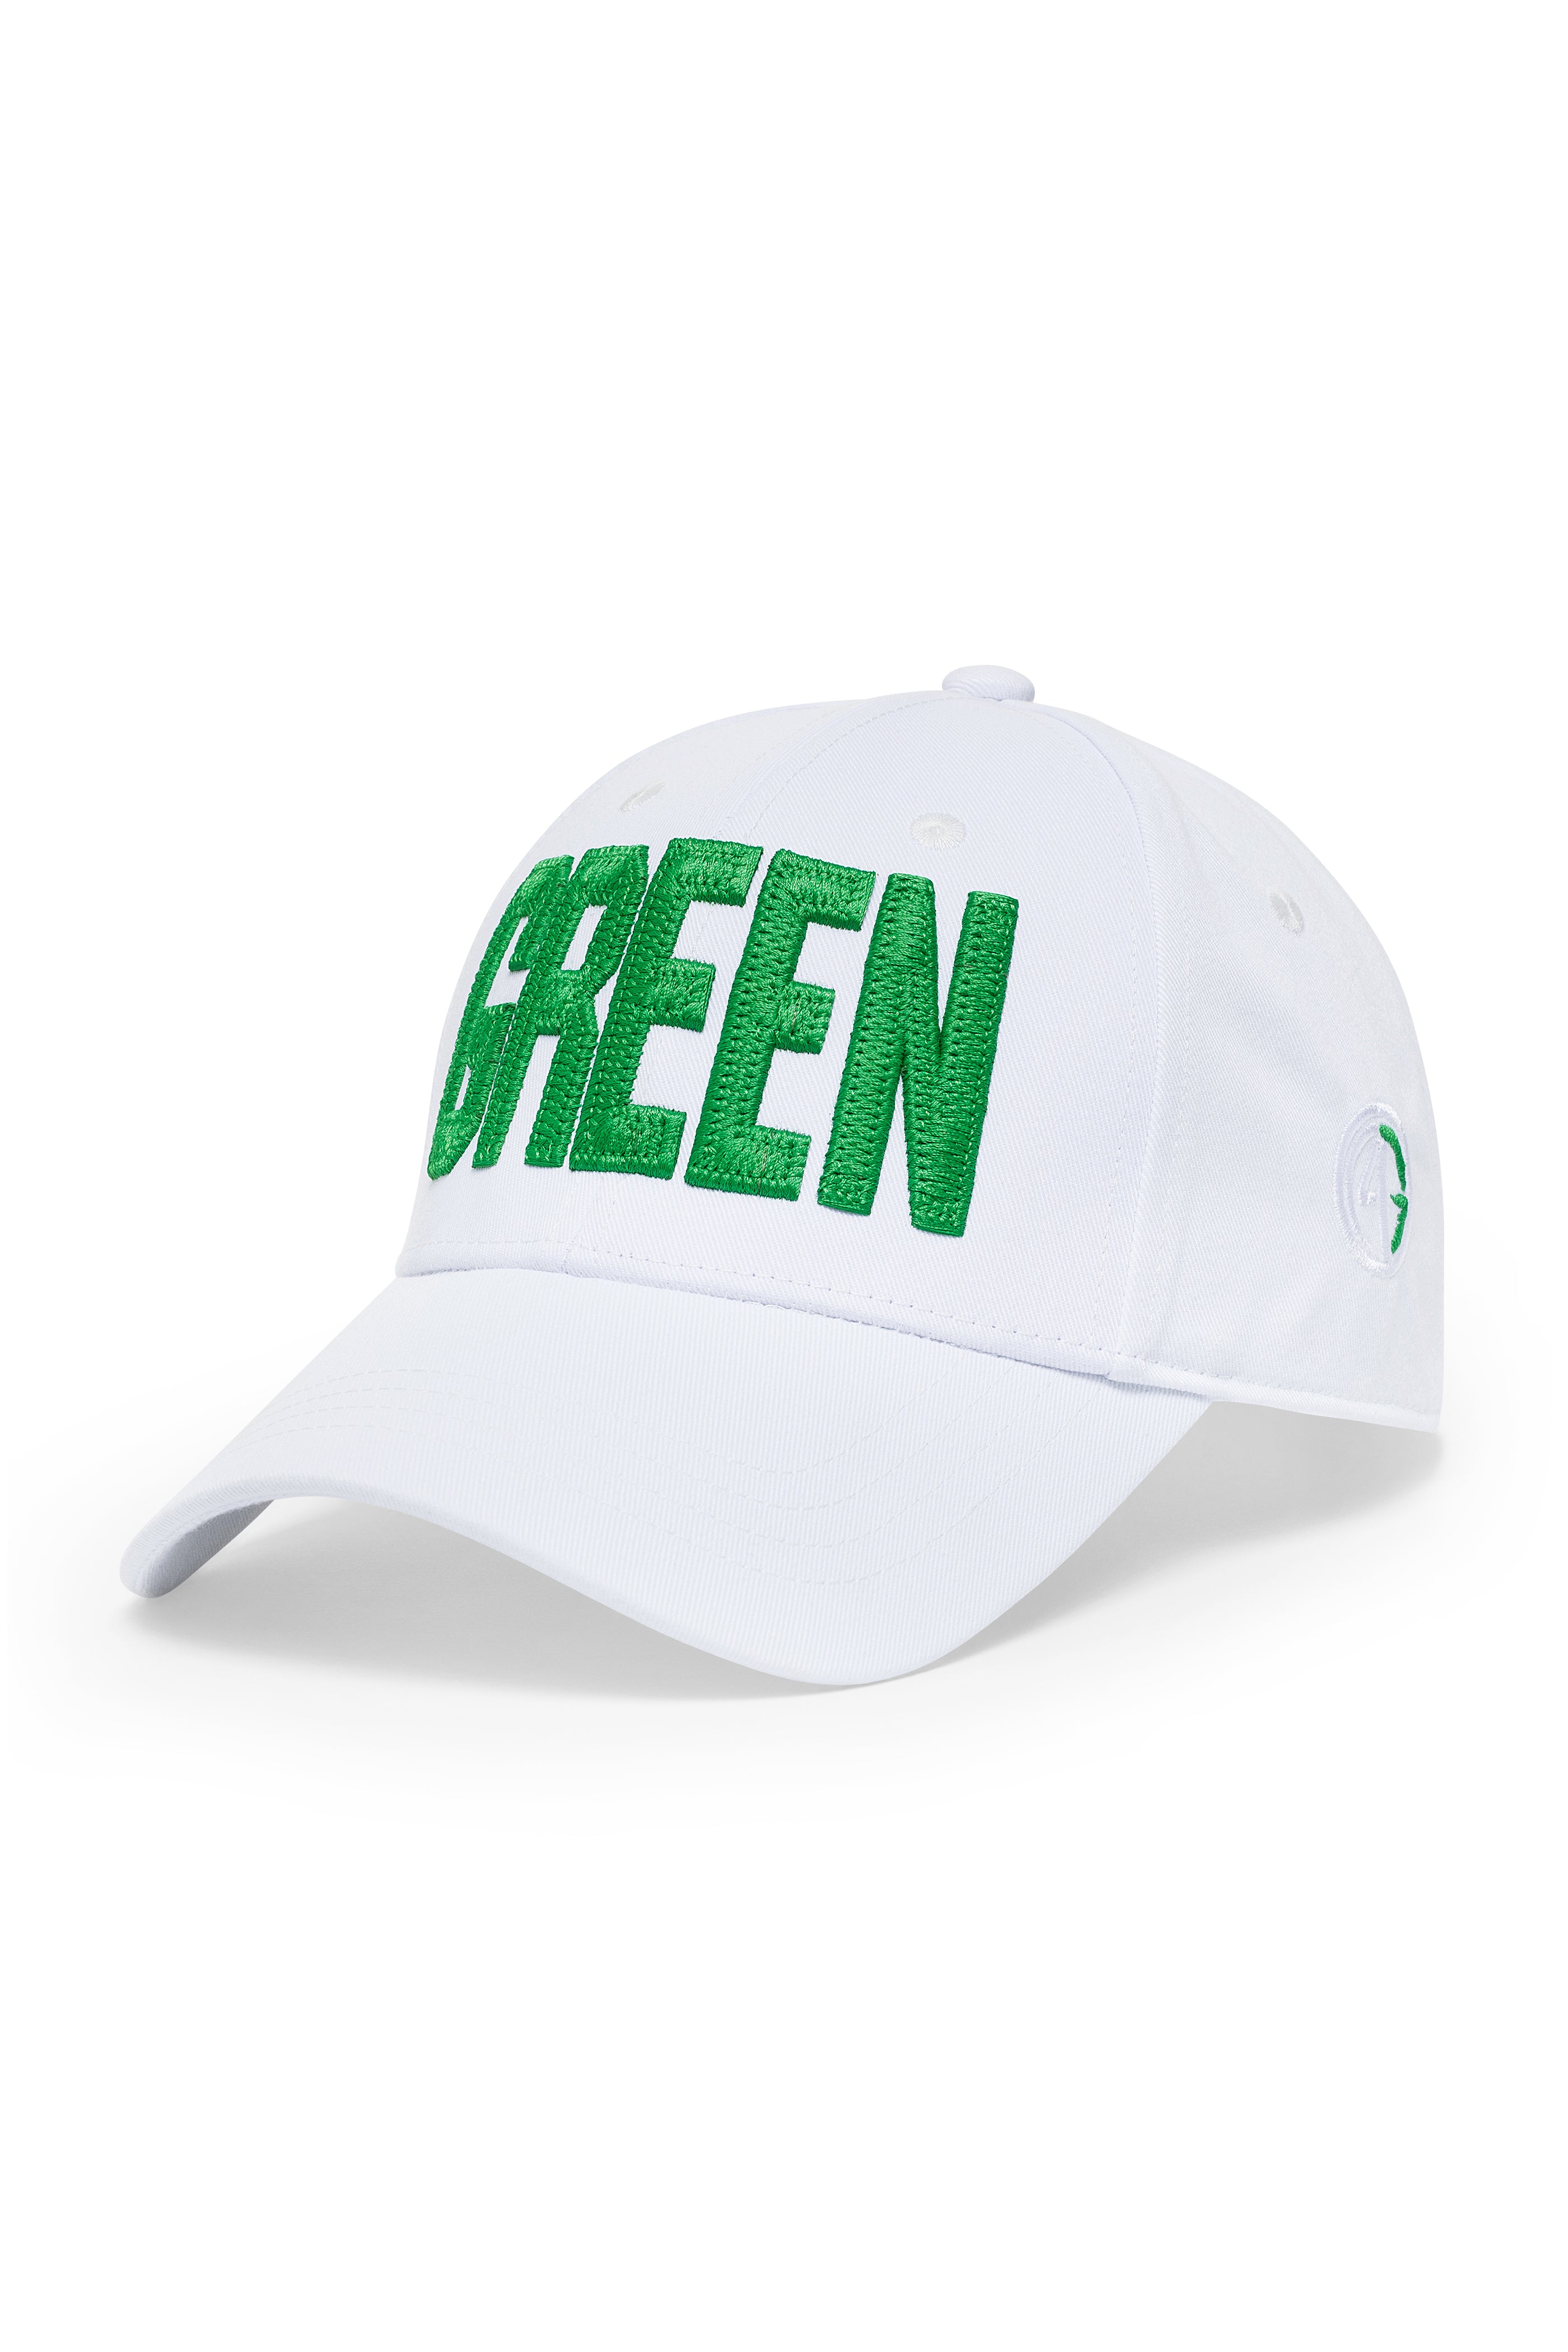 6 BOTTLES GREEN HAT IN WHITE